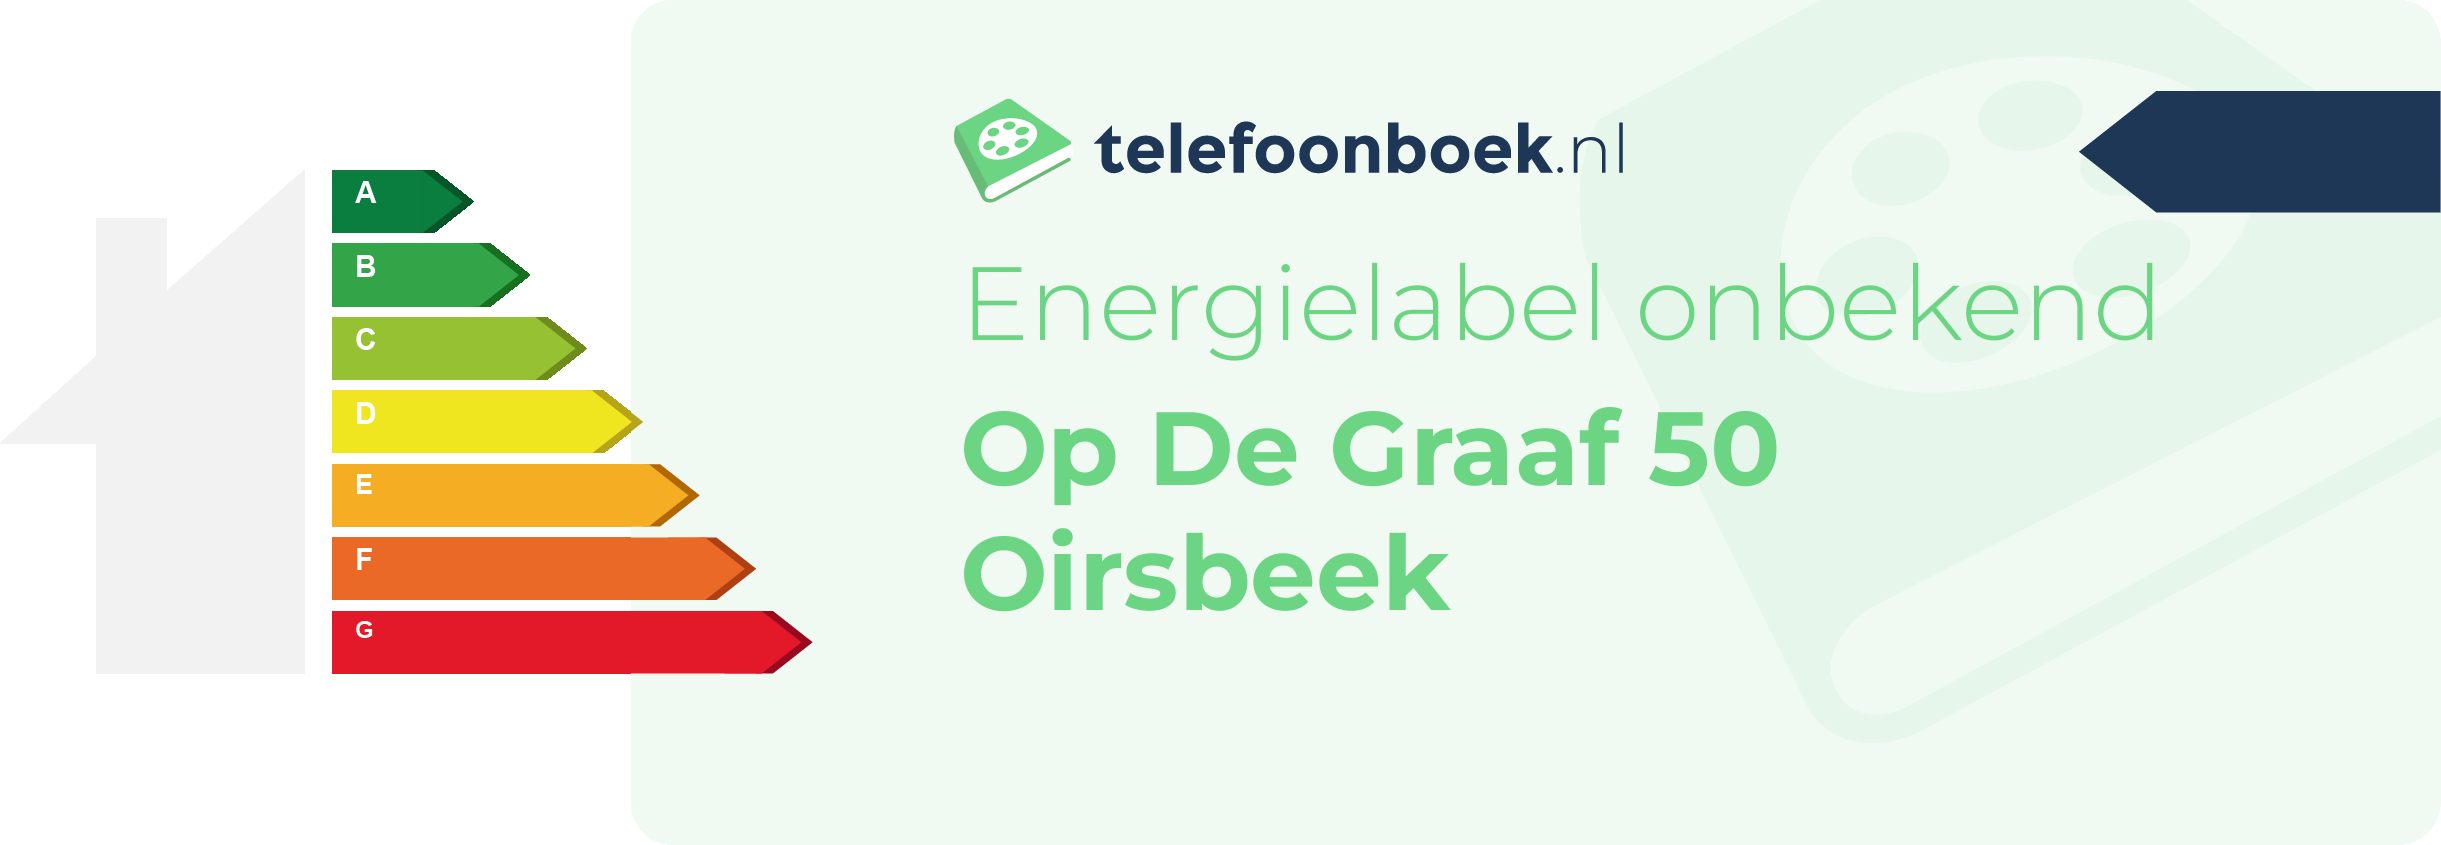 Energielabel Op De Graaf 50 Oirsbeek